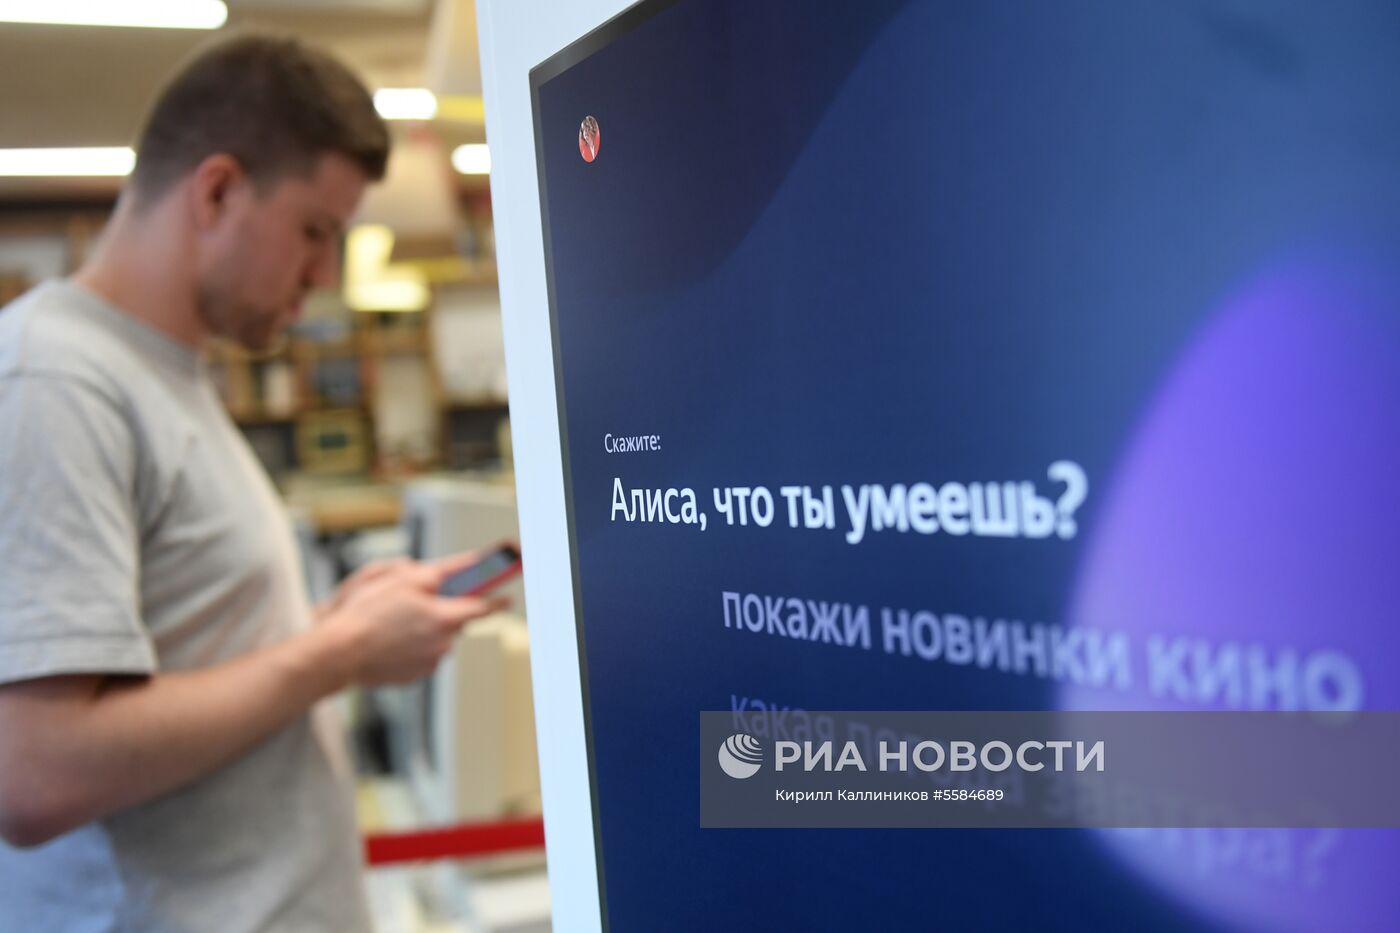 Стартовала продажа умной колонки "Яндекс.Станция"